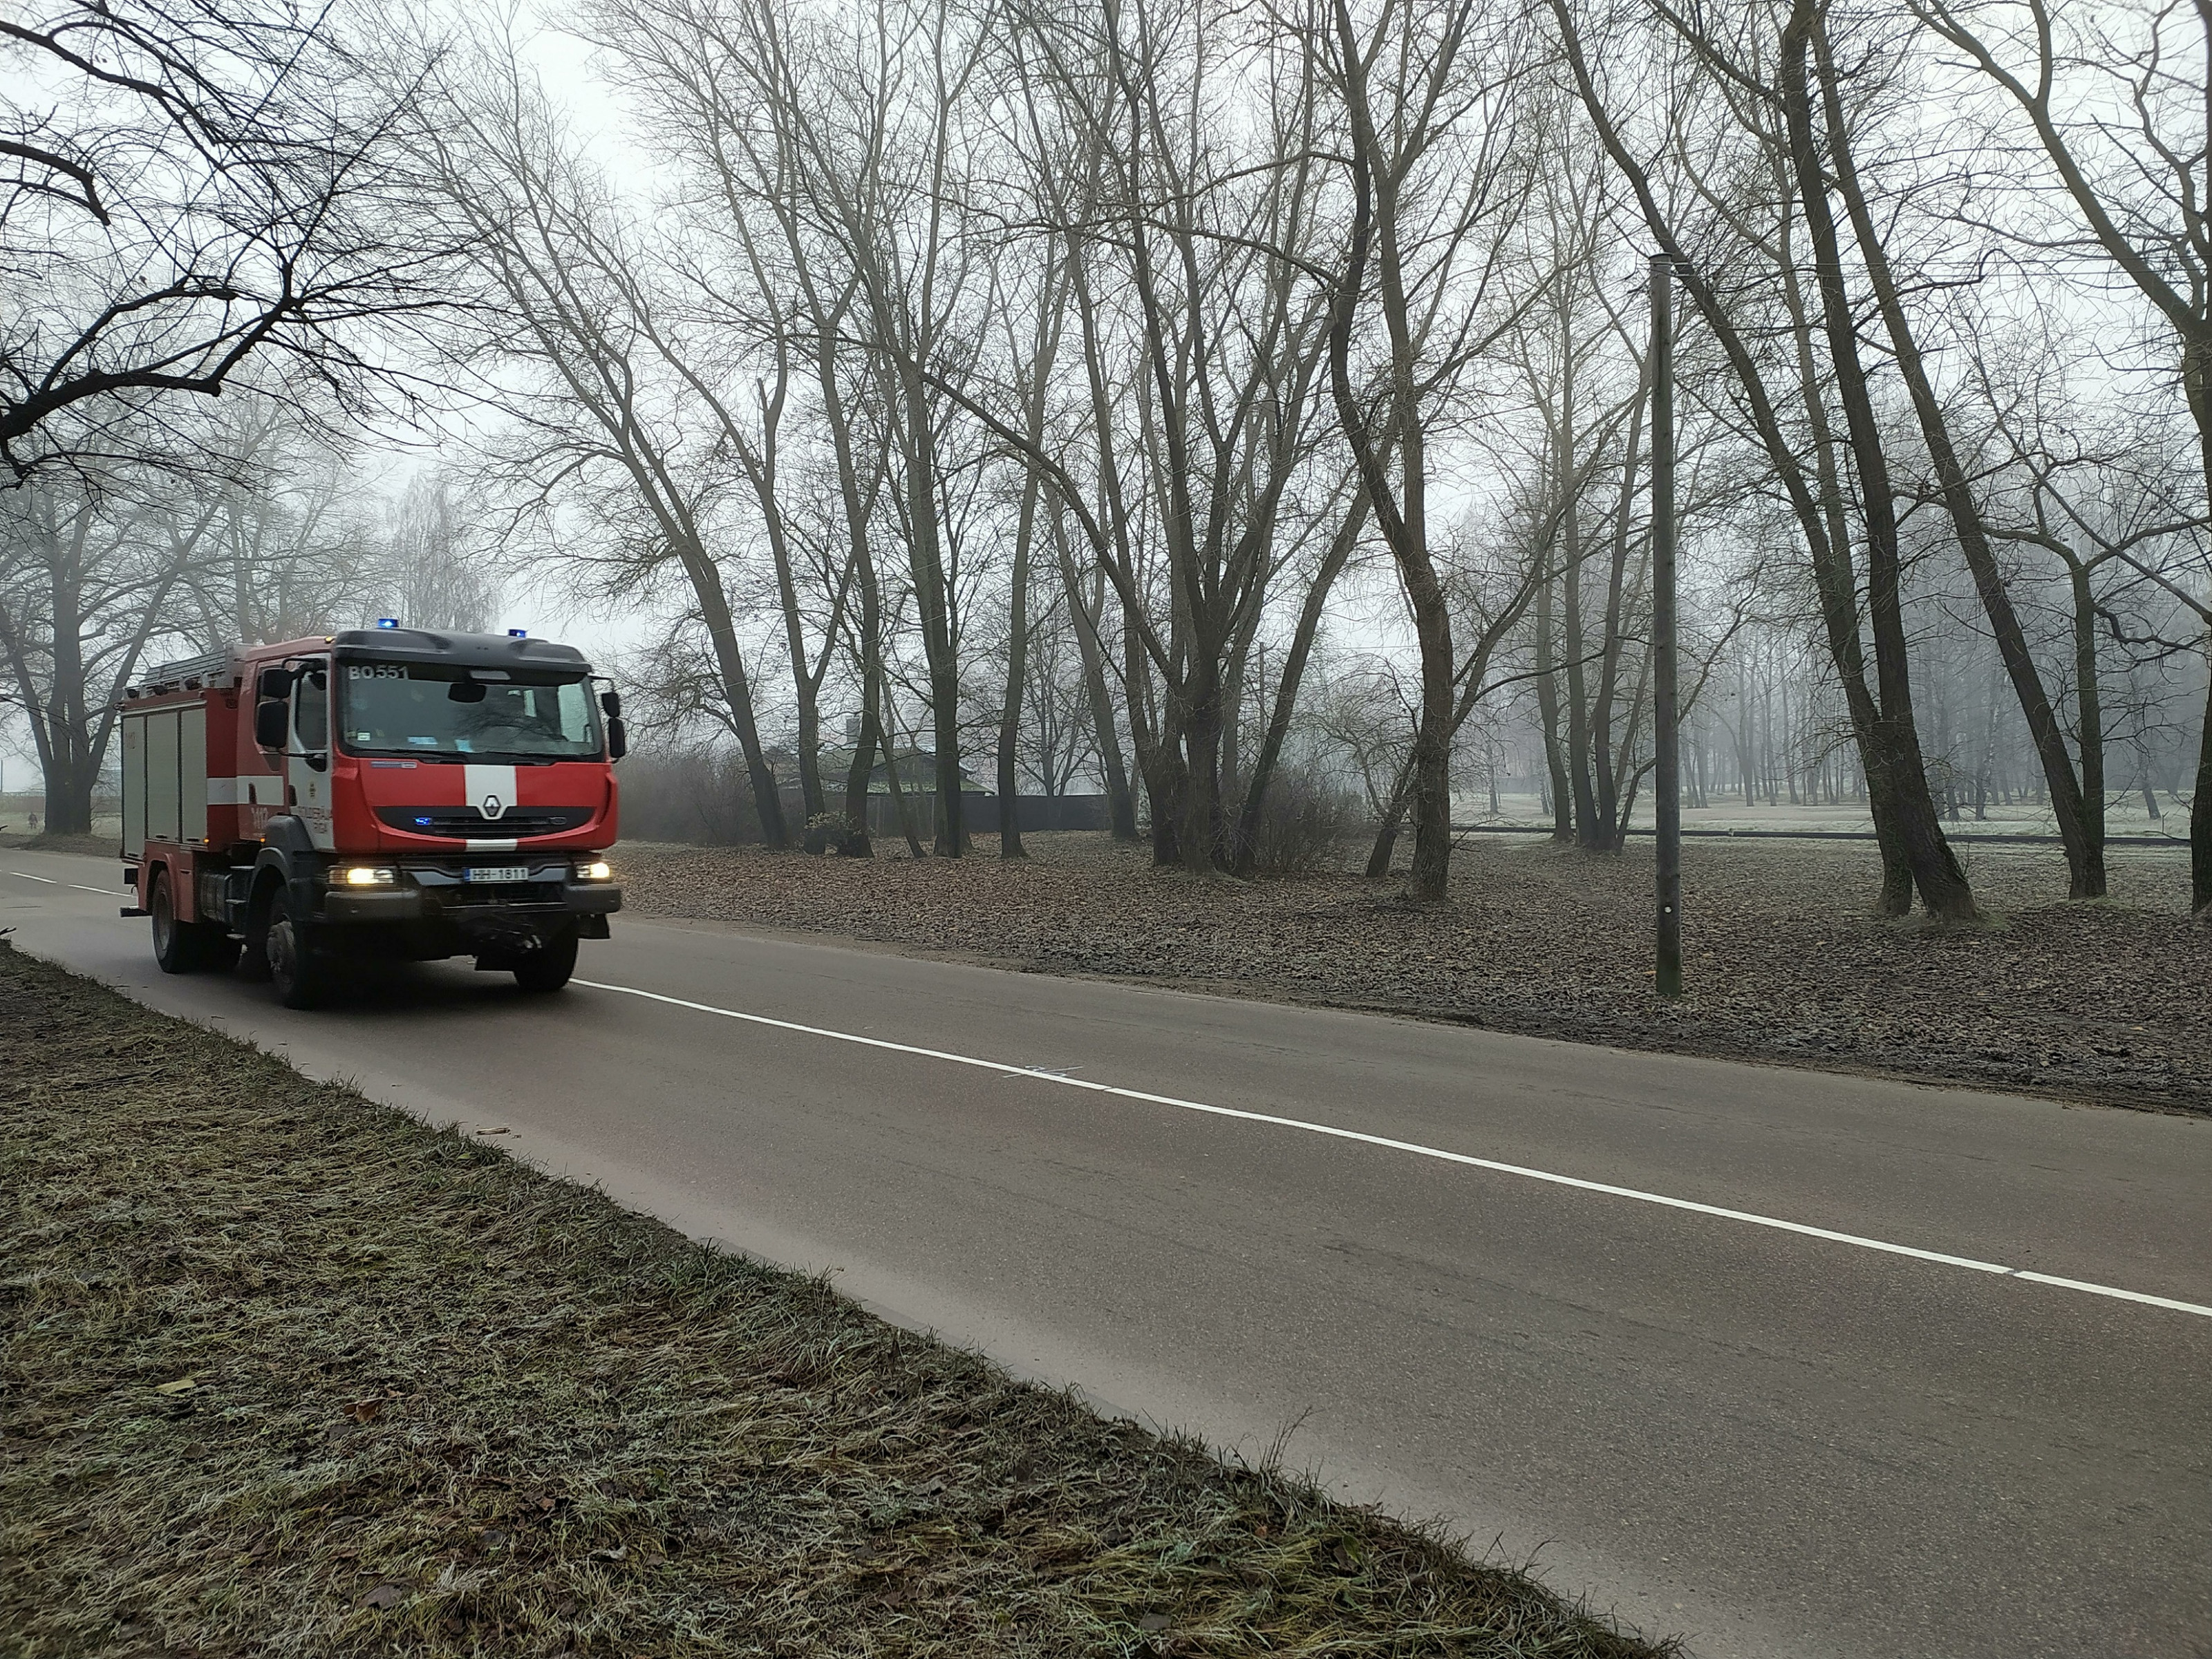 Автосервис сгорел в Нижнем Новгороде: огонь повредил 5 автомобилей